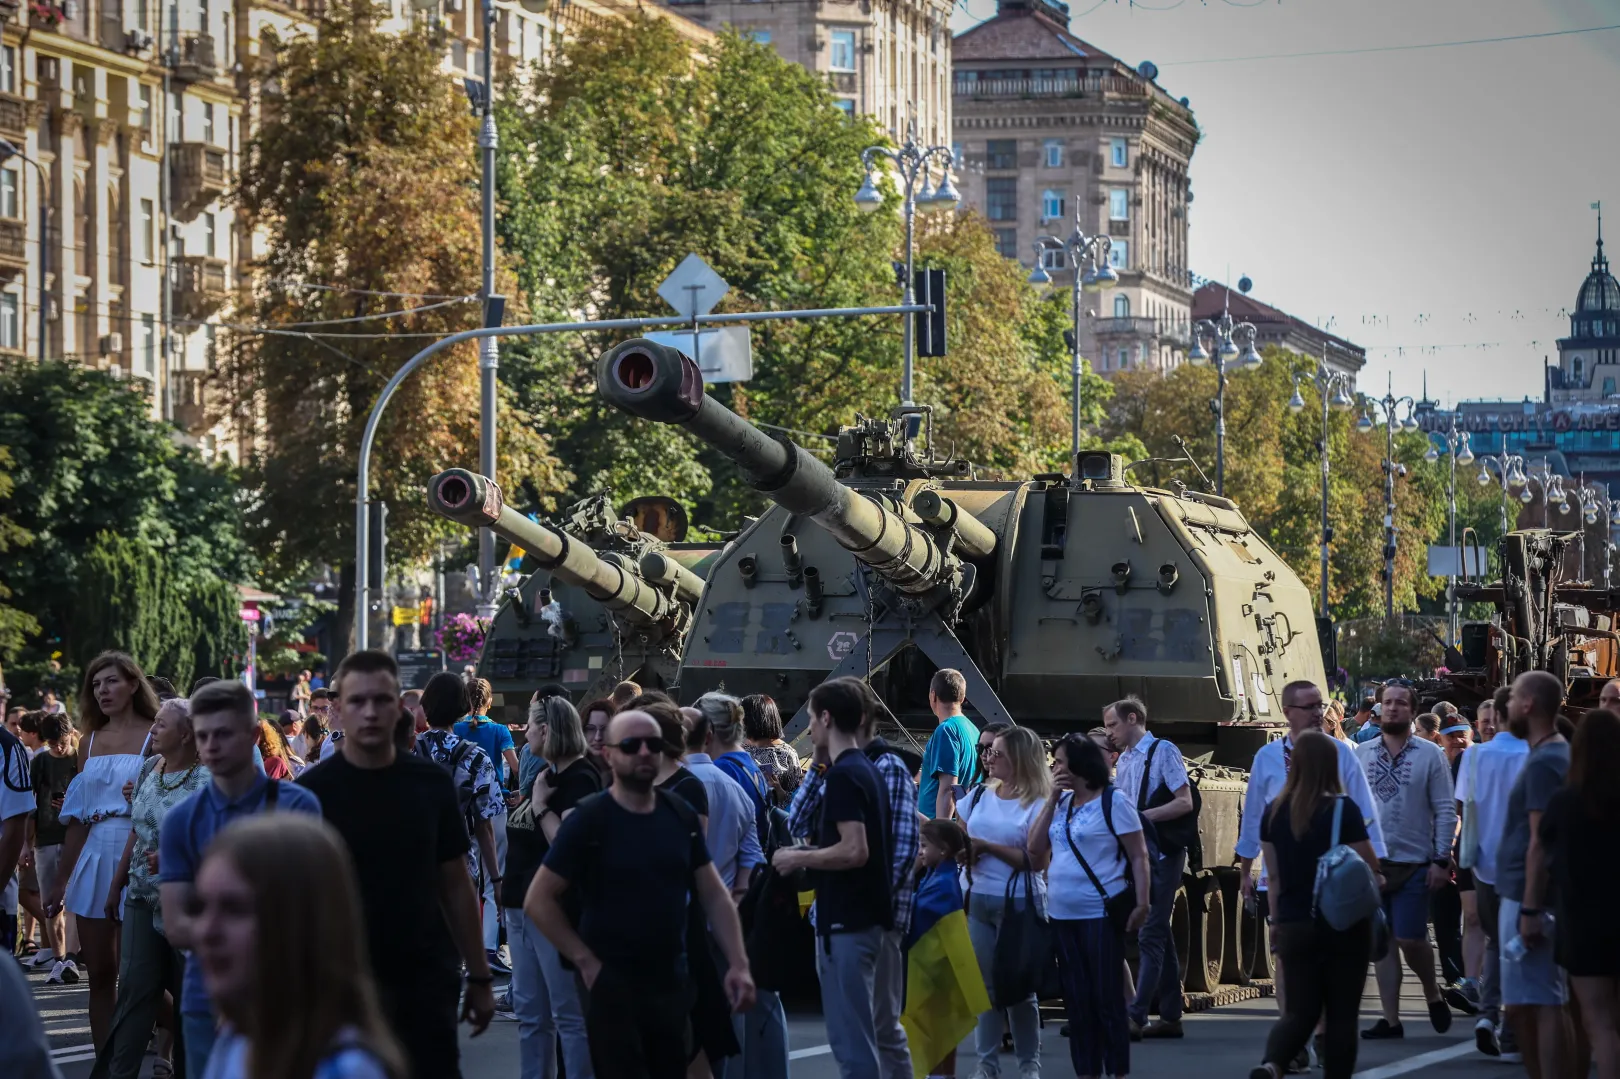 Kijev belvárosa Ukrajna függetlenségének ünnepnapján, oroszoktól zsákmányolt harci járművekkel – Fotó: Huszti István / Telex